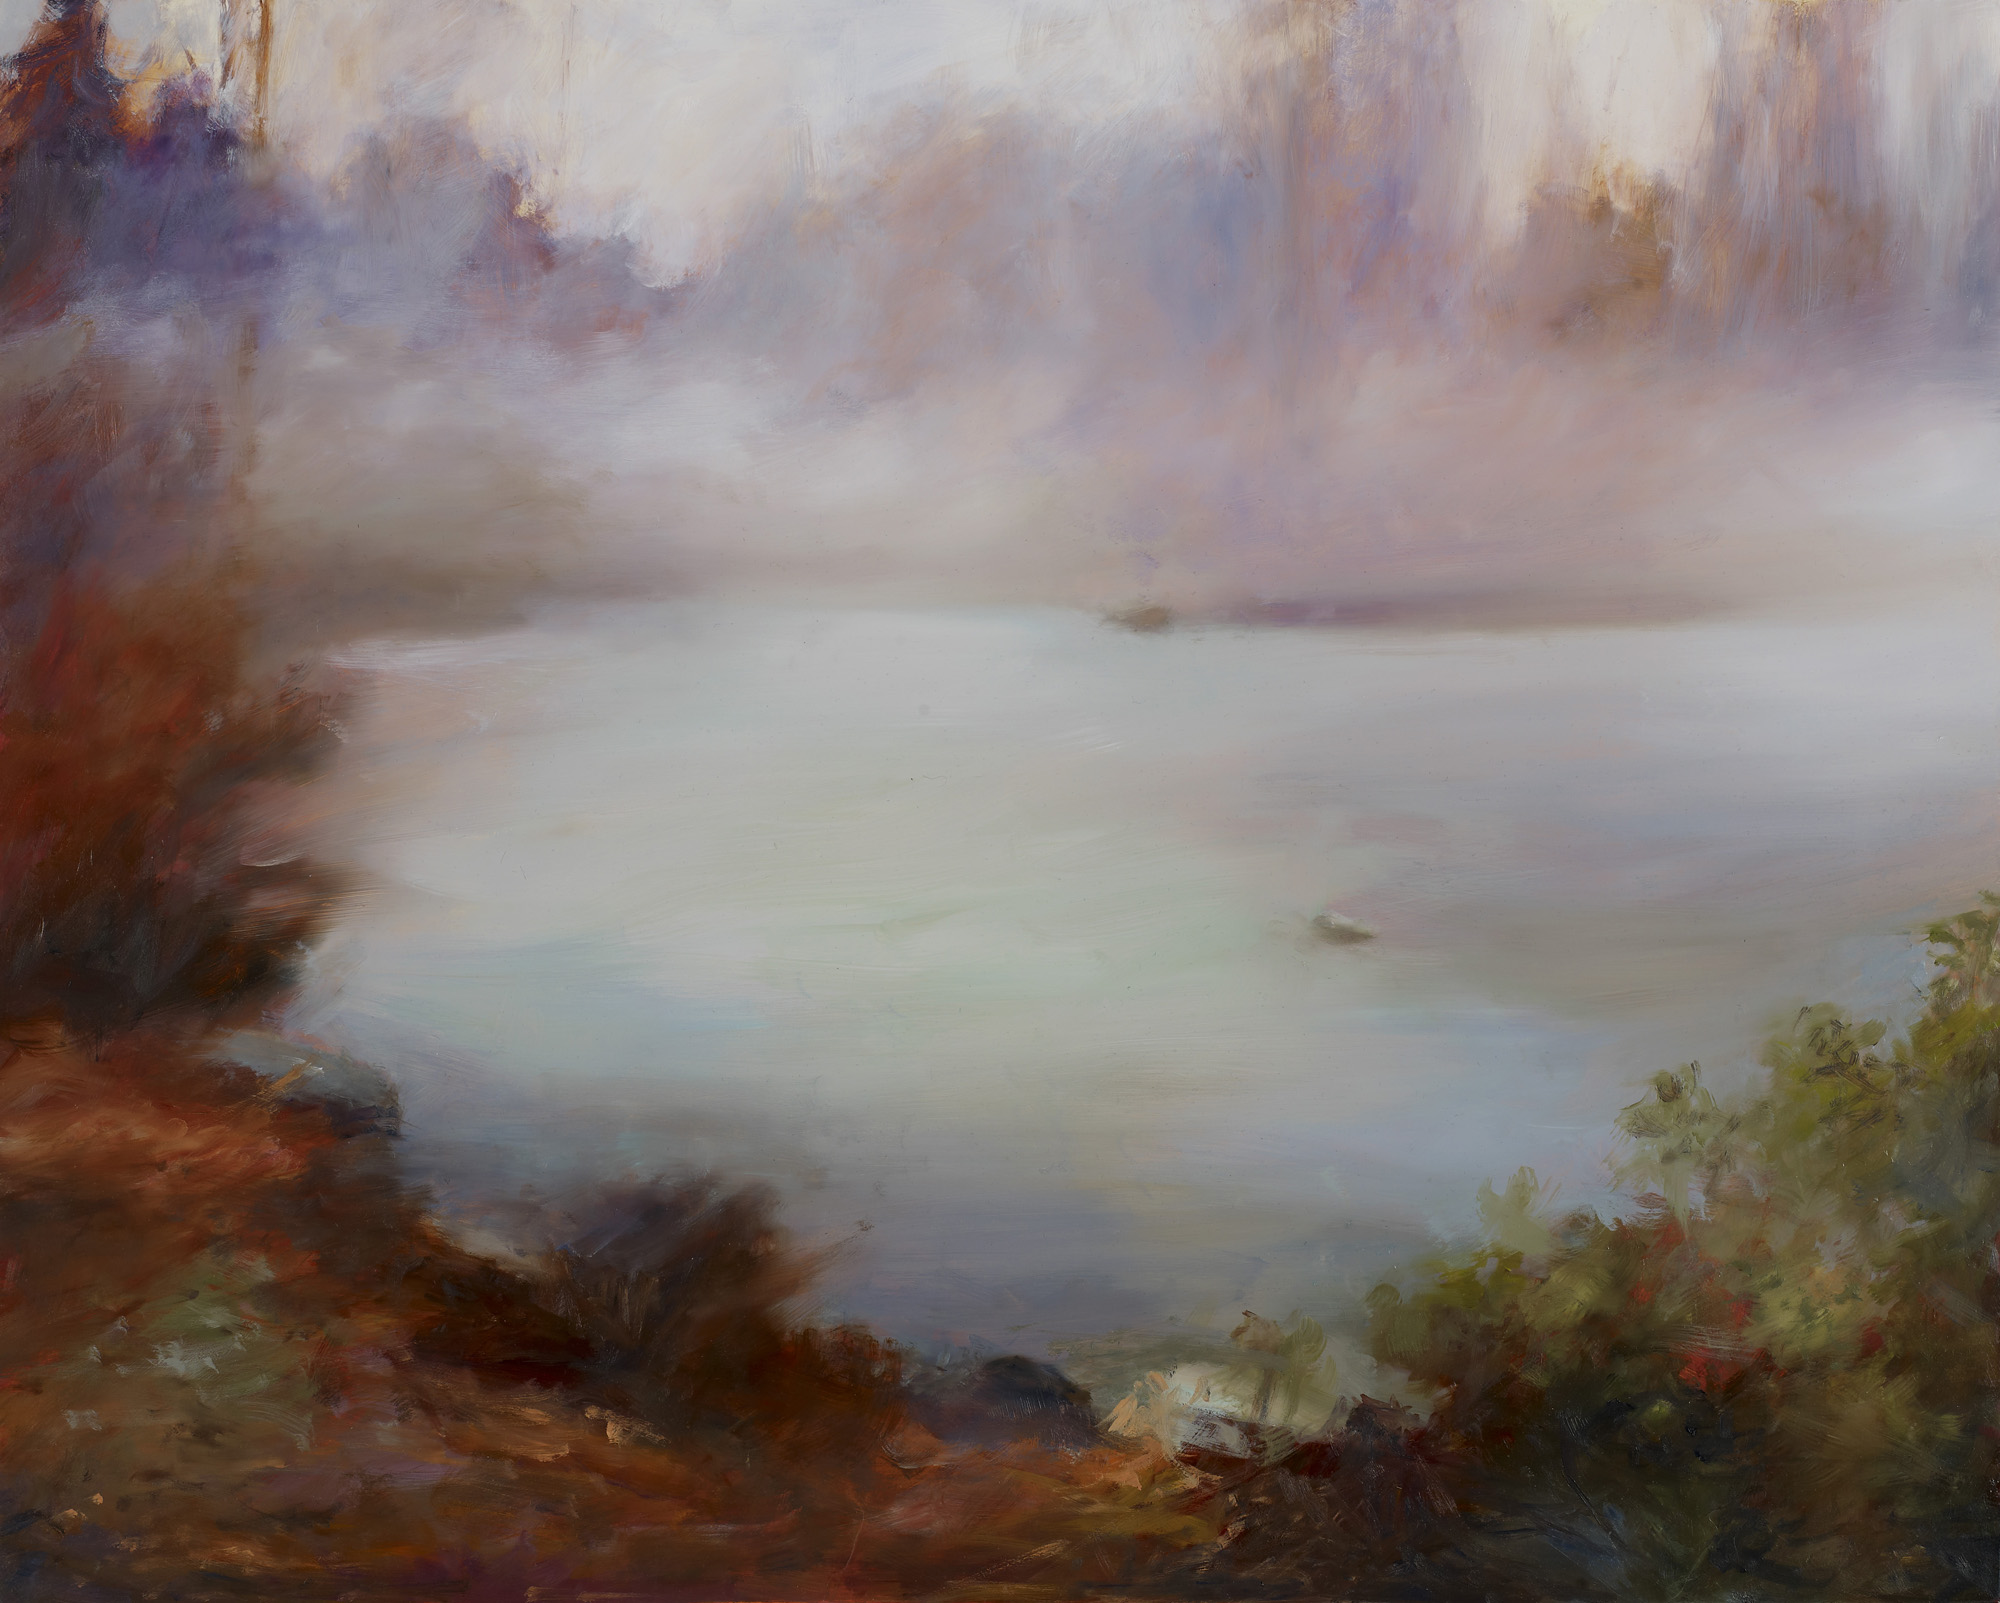  Morning Fog Oil on panel 24” x 30” 